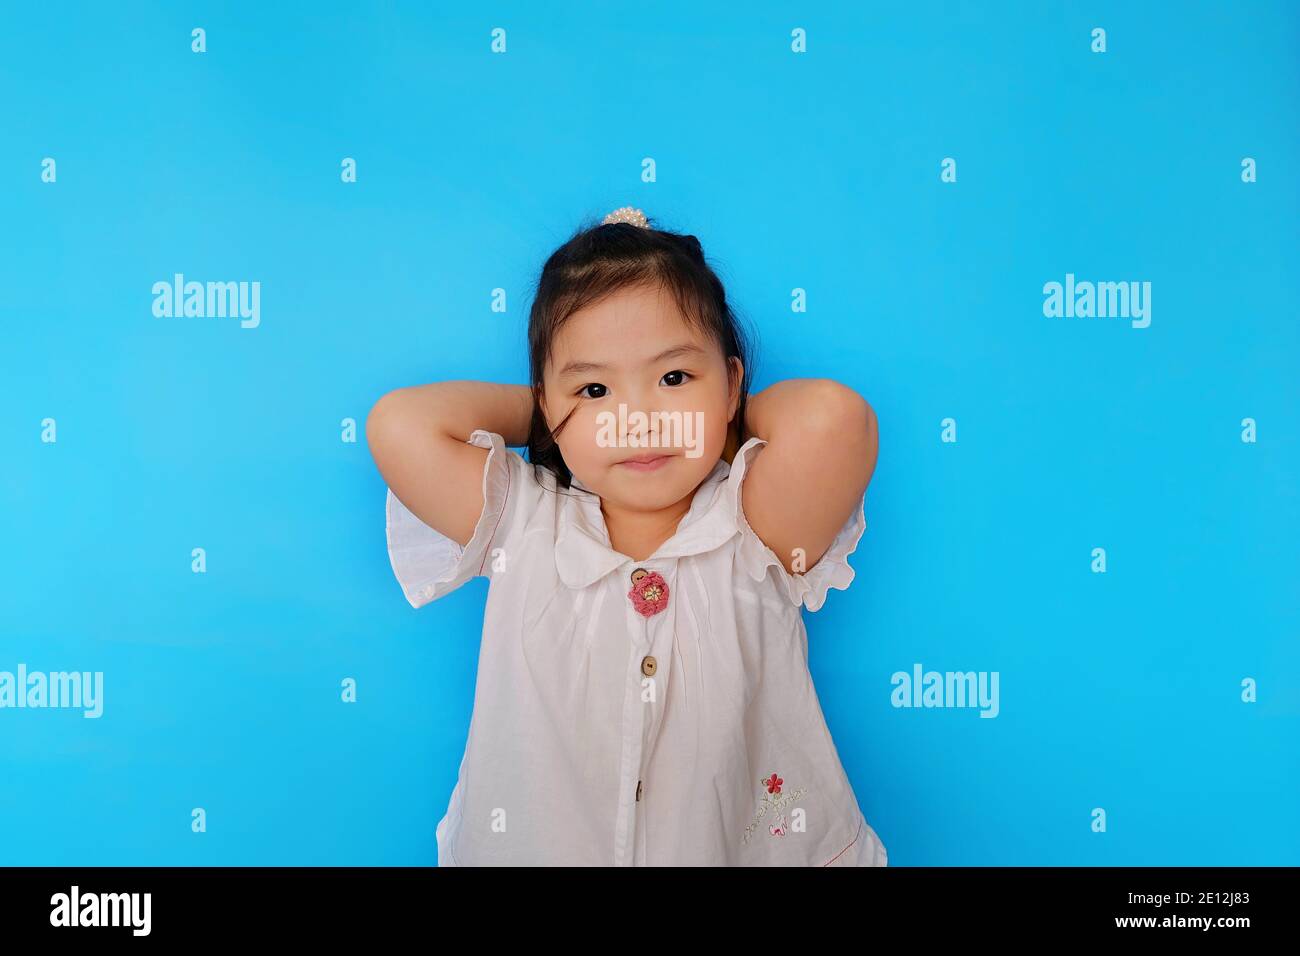 Une jolie jeune fille asiatique confiante est debout avec ses mains derrière sa tête, souriant. Fond bleu clair Uni. Banque D'Images